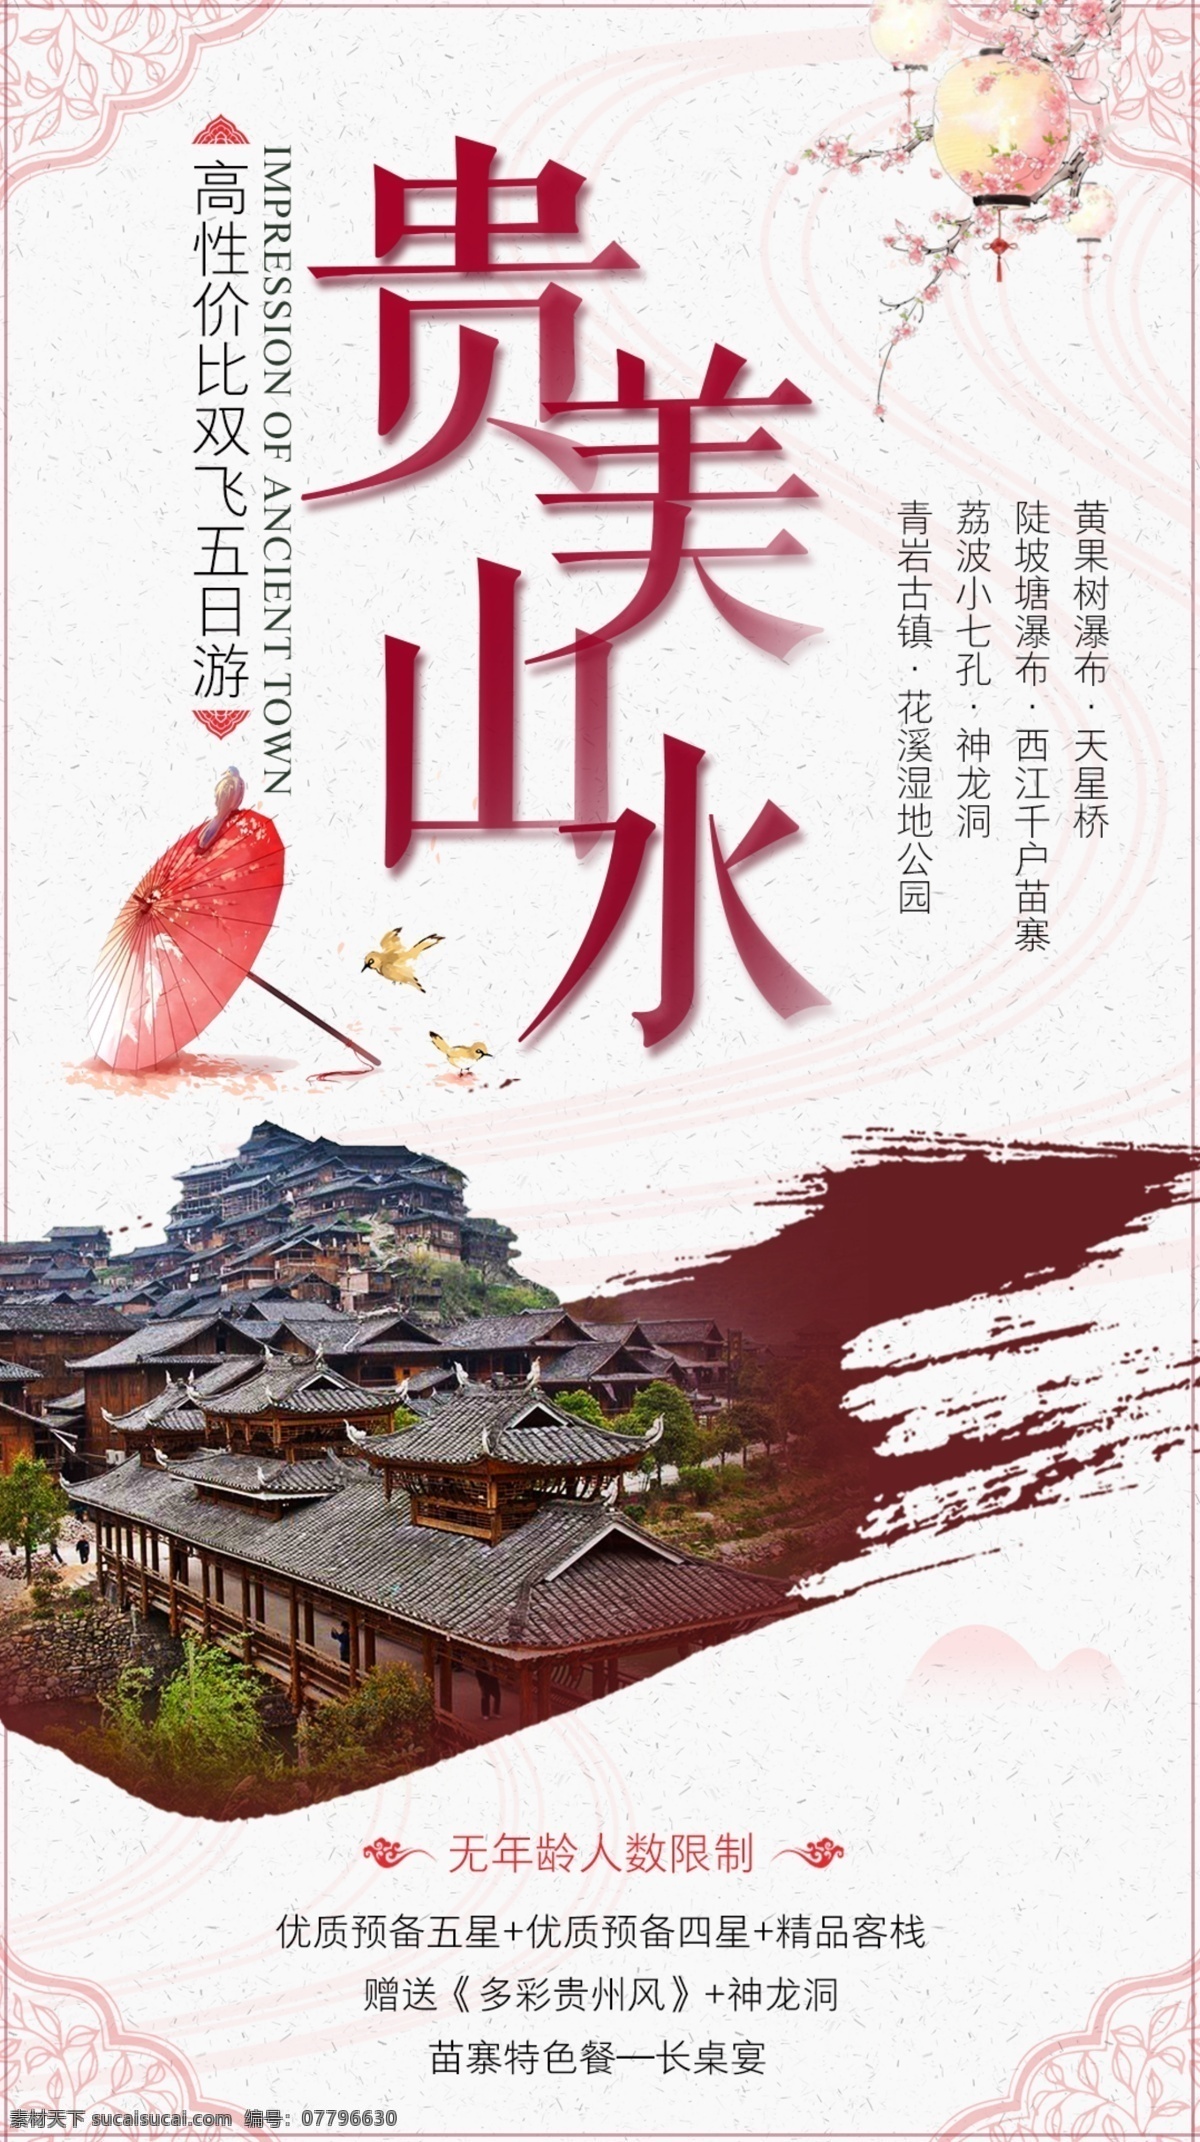 贵州旅游 微 信 海报 贵州 旅游 微信海报 中国风 水墨 古风